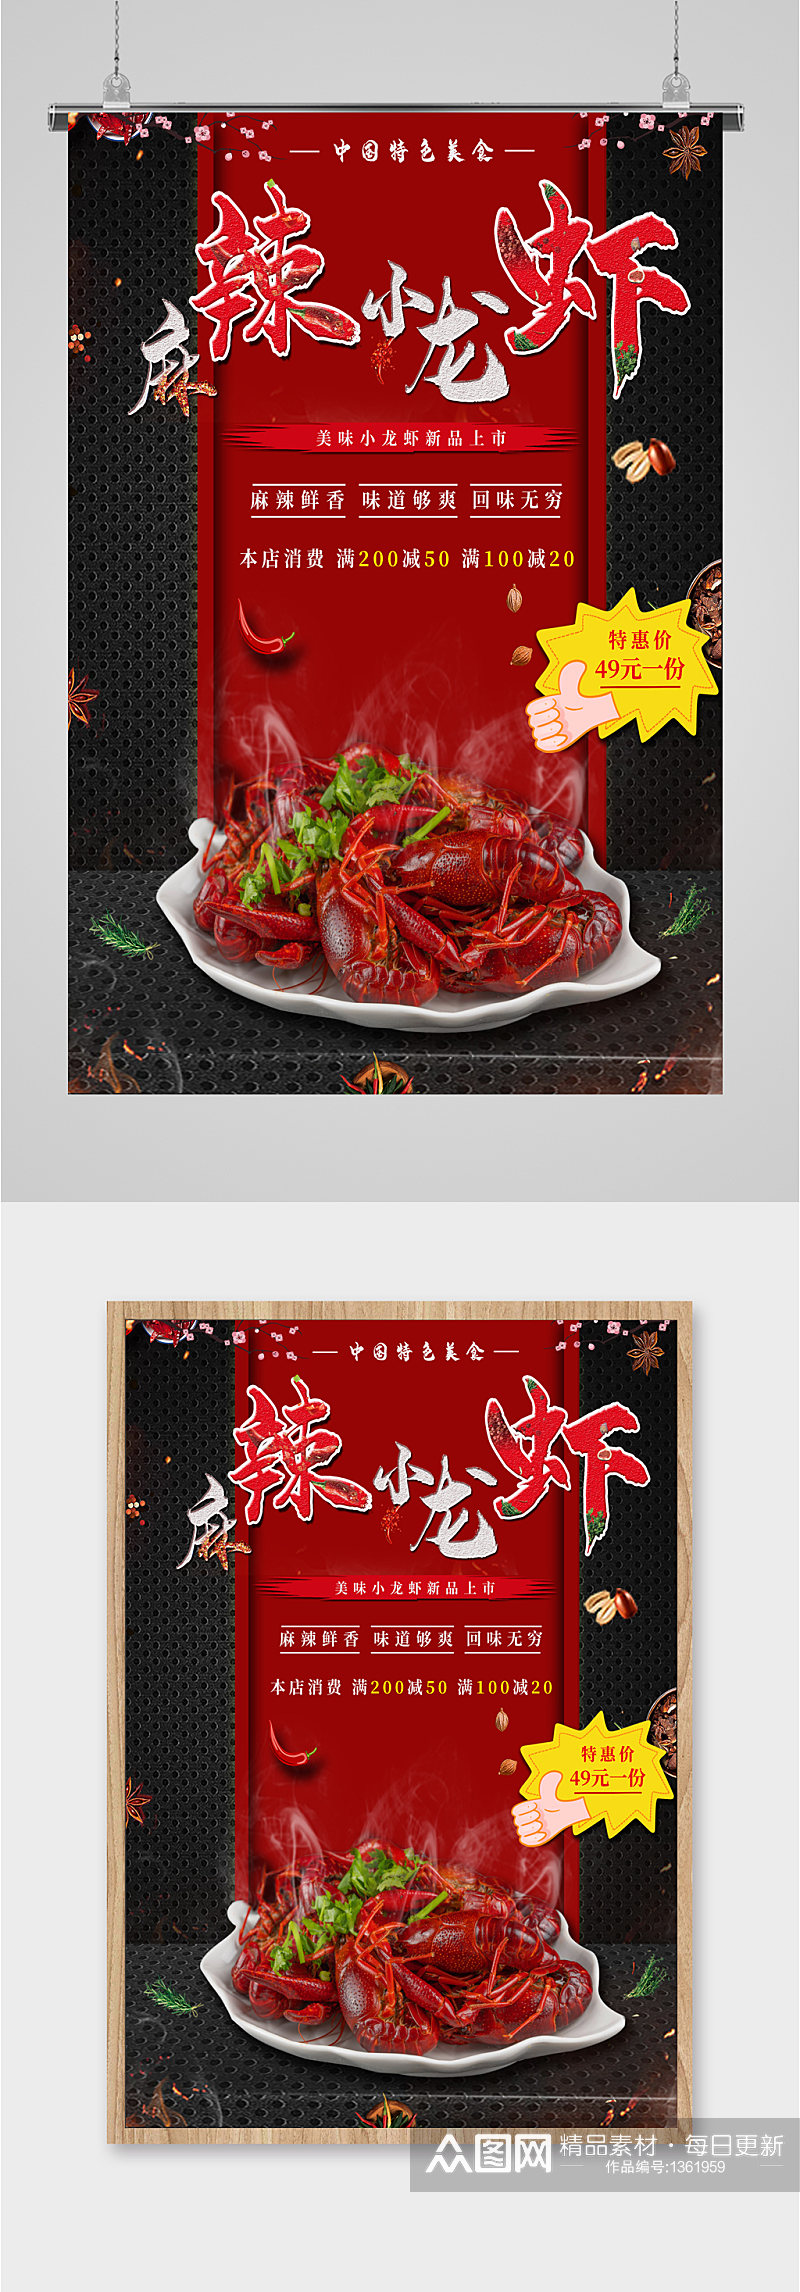 麻辣小龙虾美食宣传海报素材